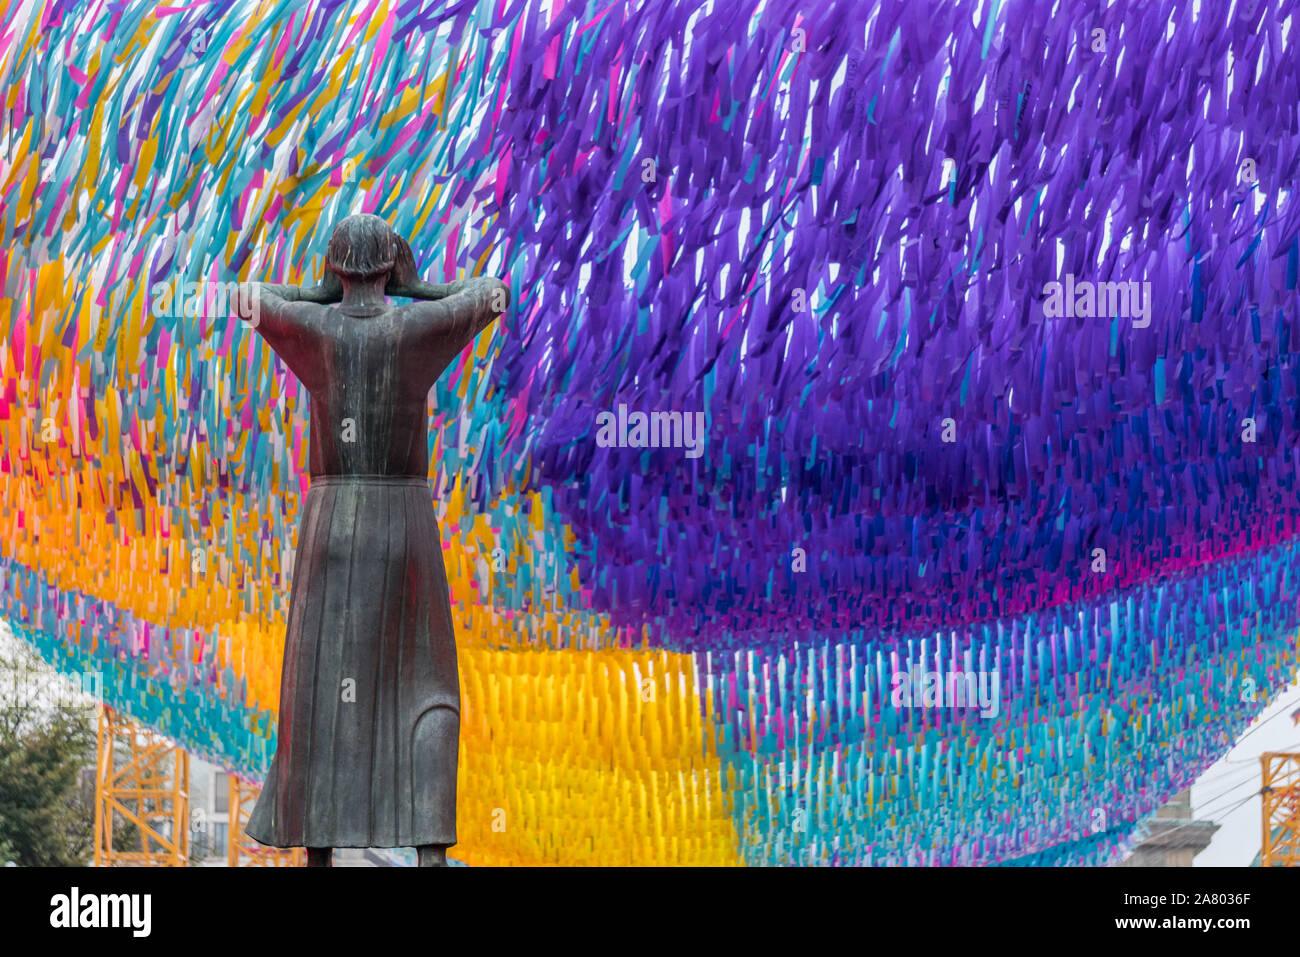 Straße des 17. Juni Berlin, Kunst Installation 'Visions in Motion" durch Los Angeles Künstler Patrick Shearn für den 30. Jahrestag des Mauerfalls. Stockfoto